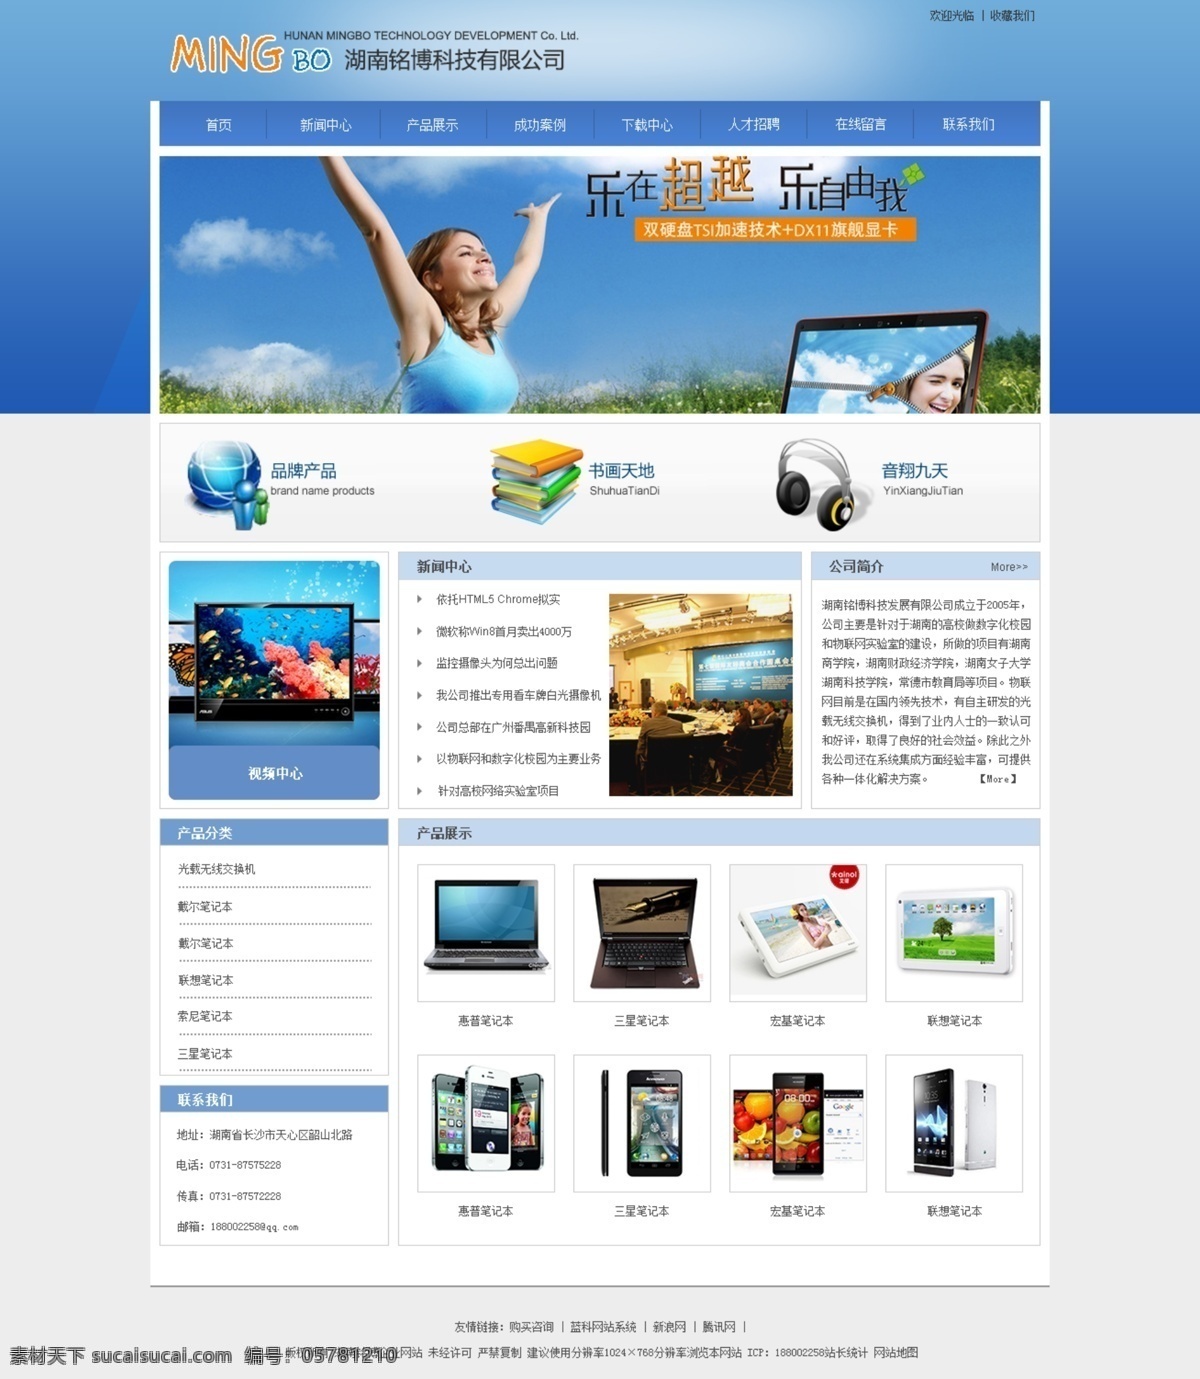 企业网站 企业 网页设计 网站 原创 中文模板 蓝色为主色 web 界面设计 网页素材 其他网页素材